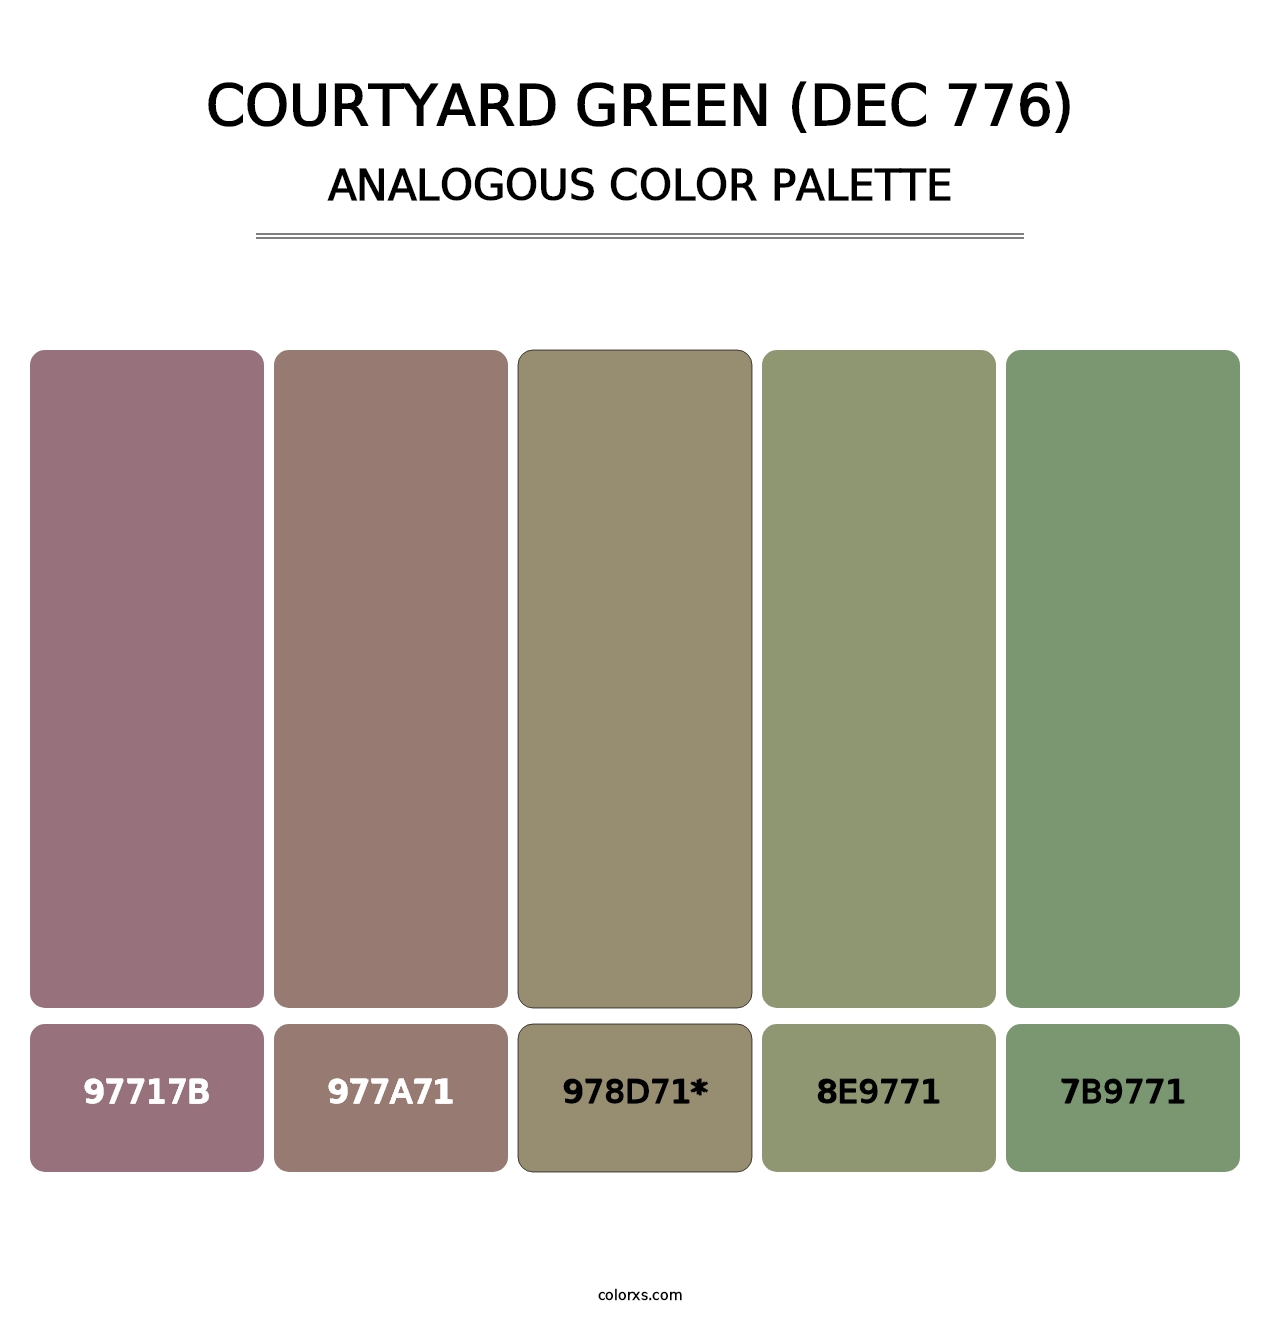 Courtyard Green (DEC 776) - Analogous Color Palette